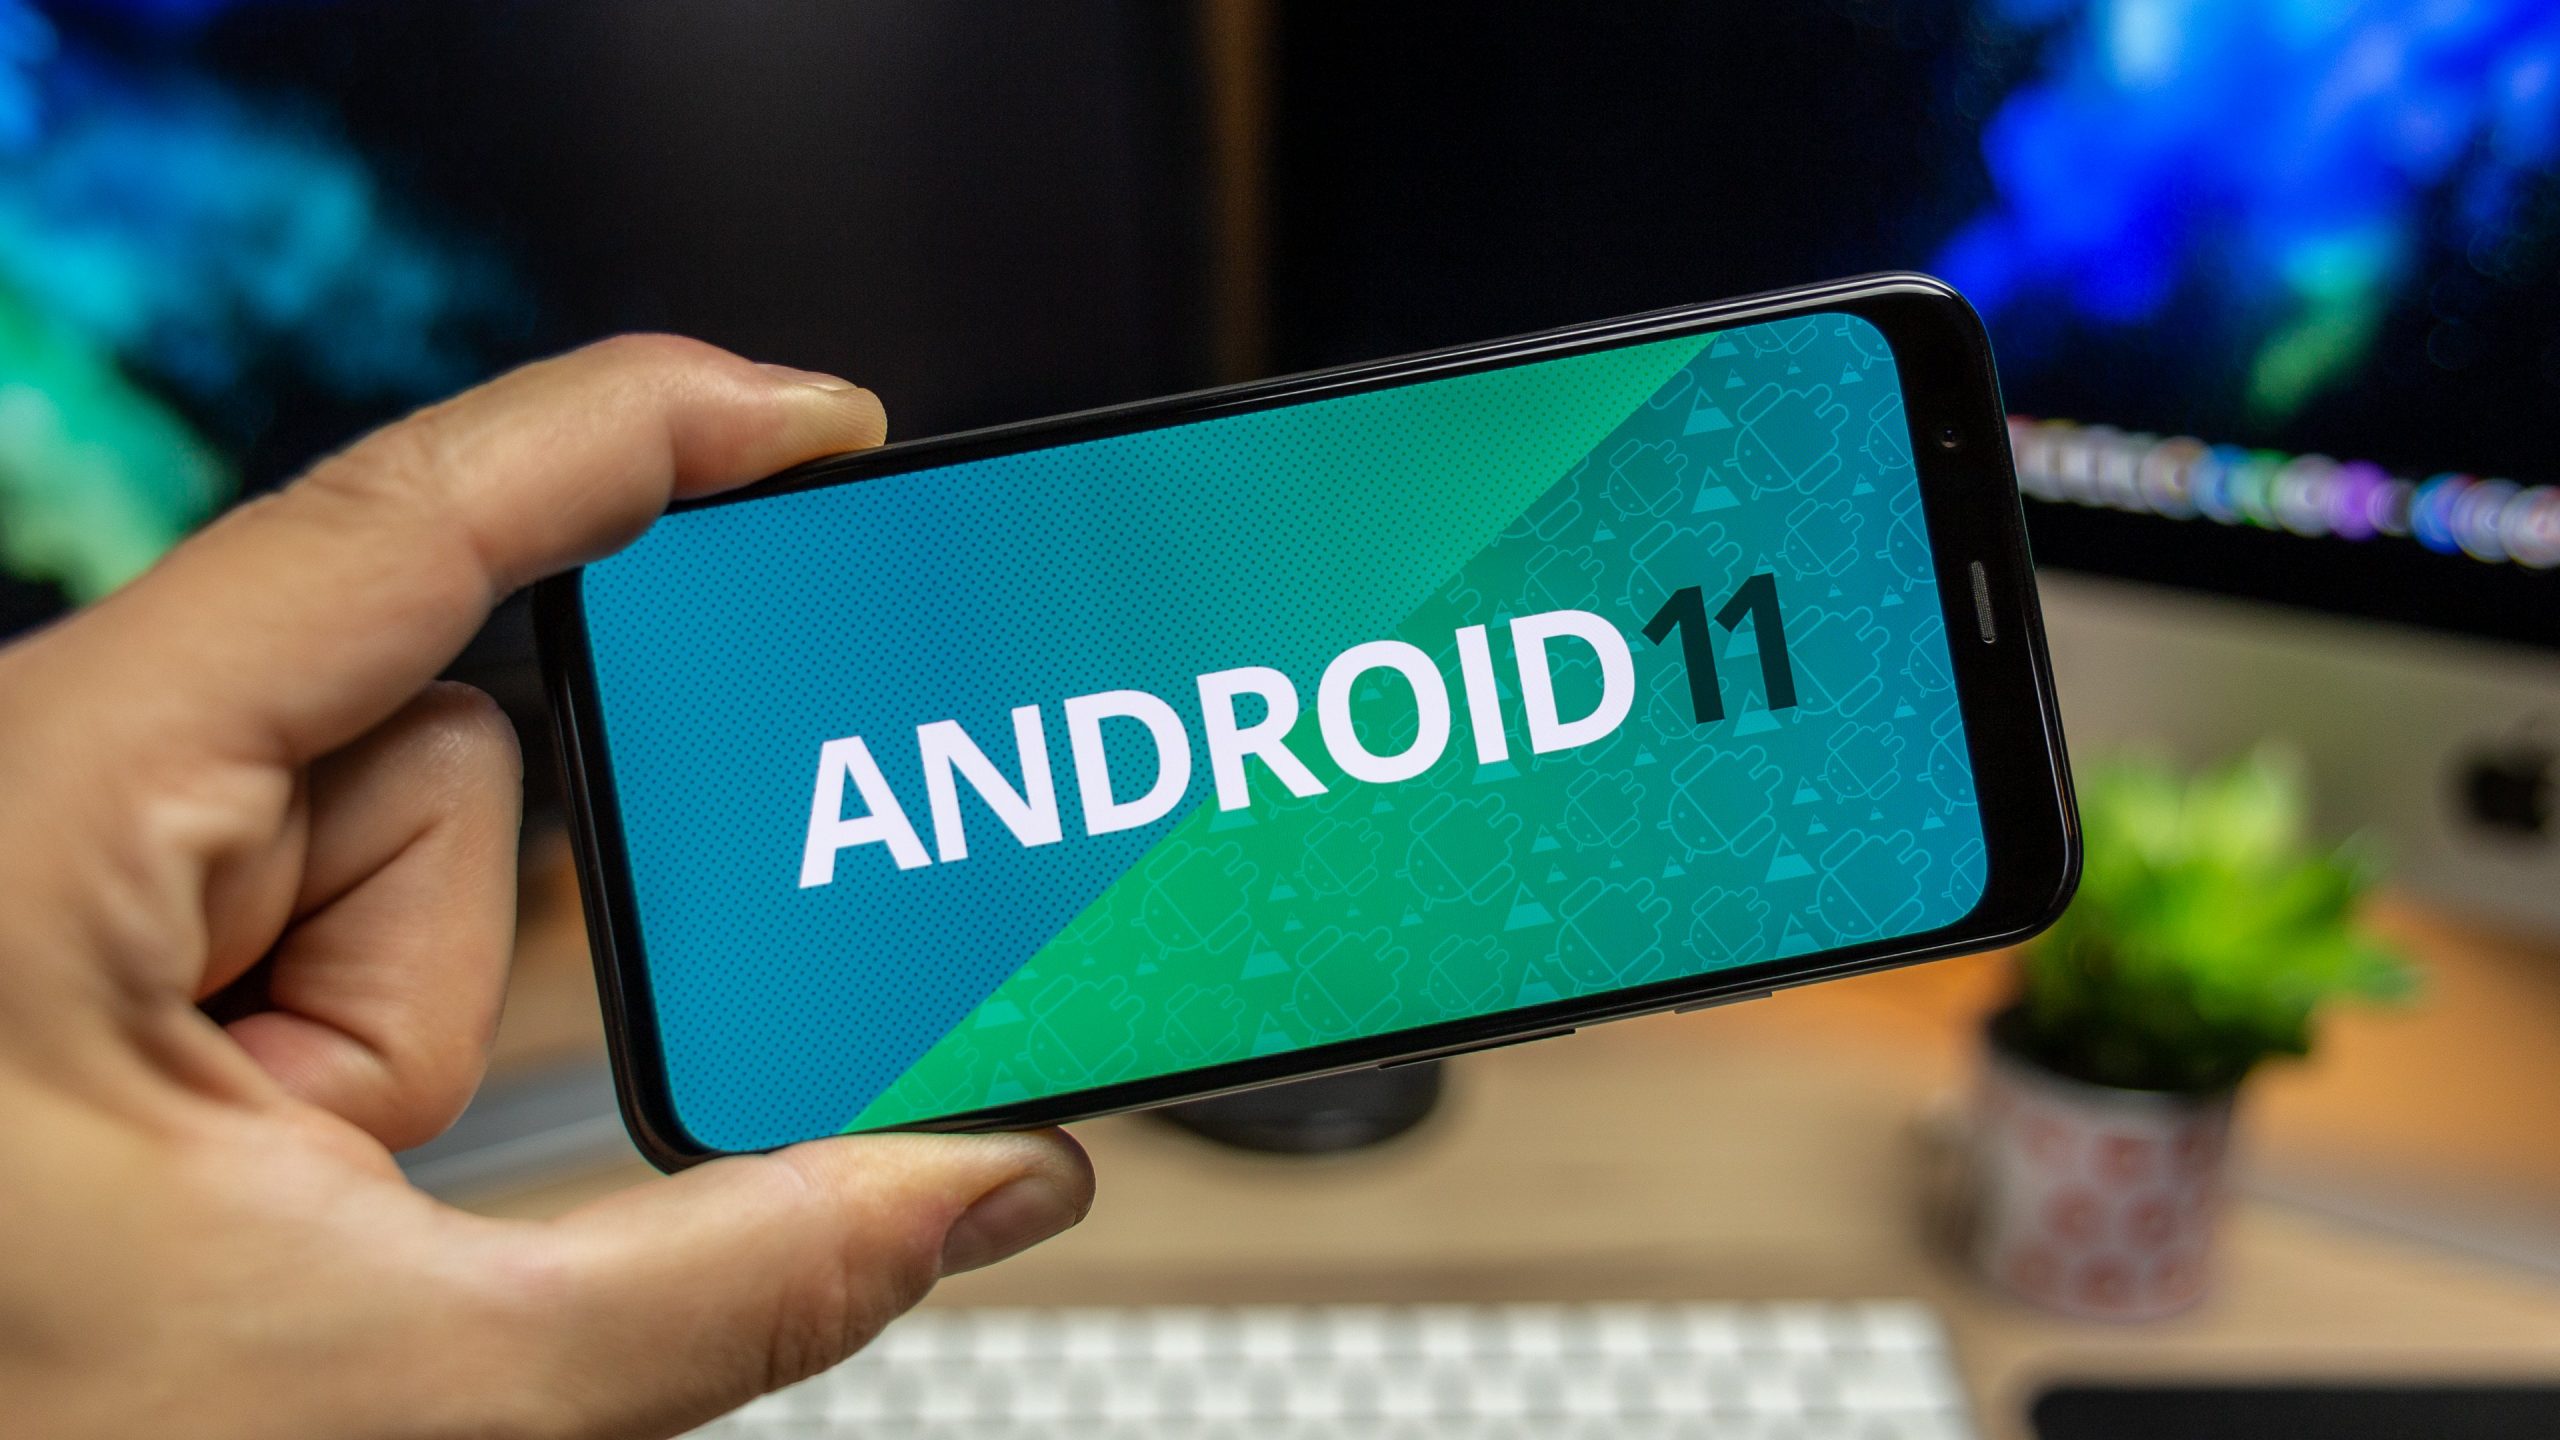 Google lekitas Android 11 beetaversiooni, kontrollige uudiseid